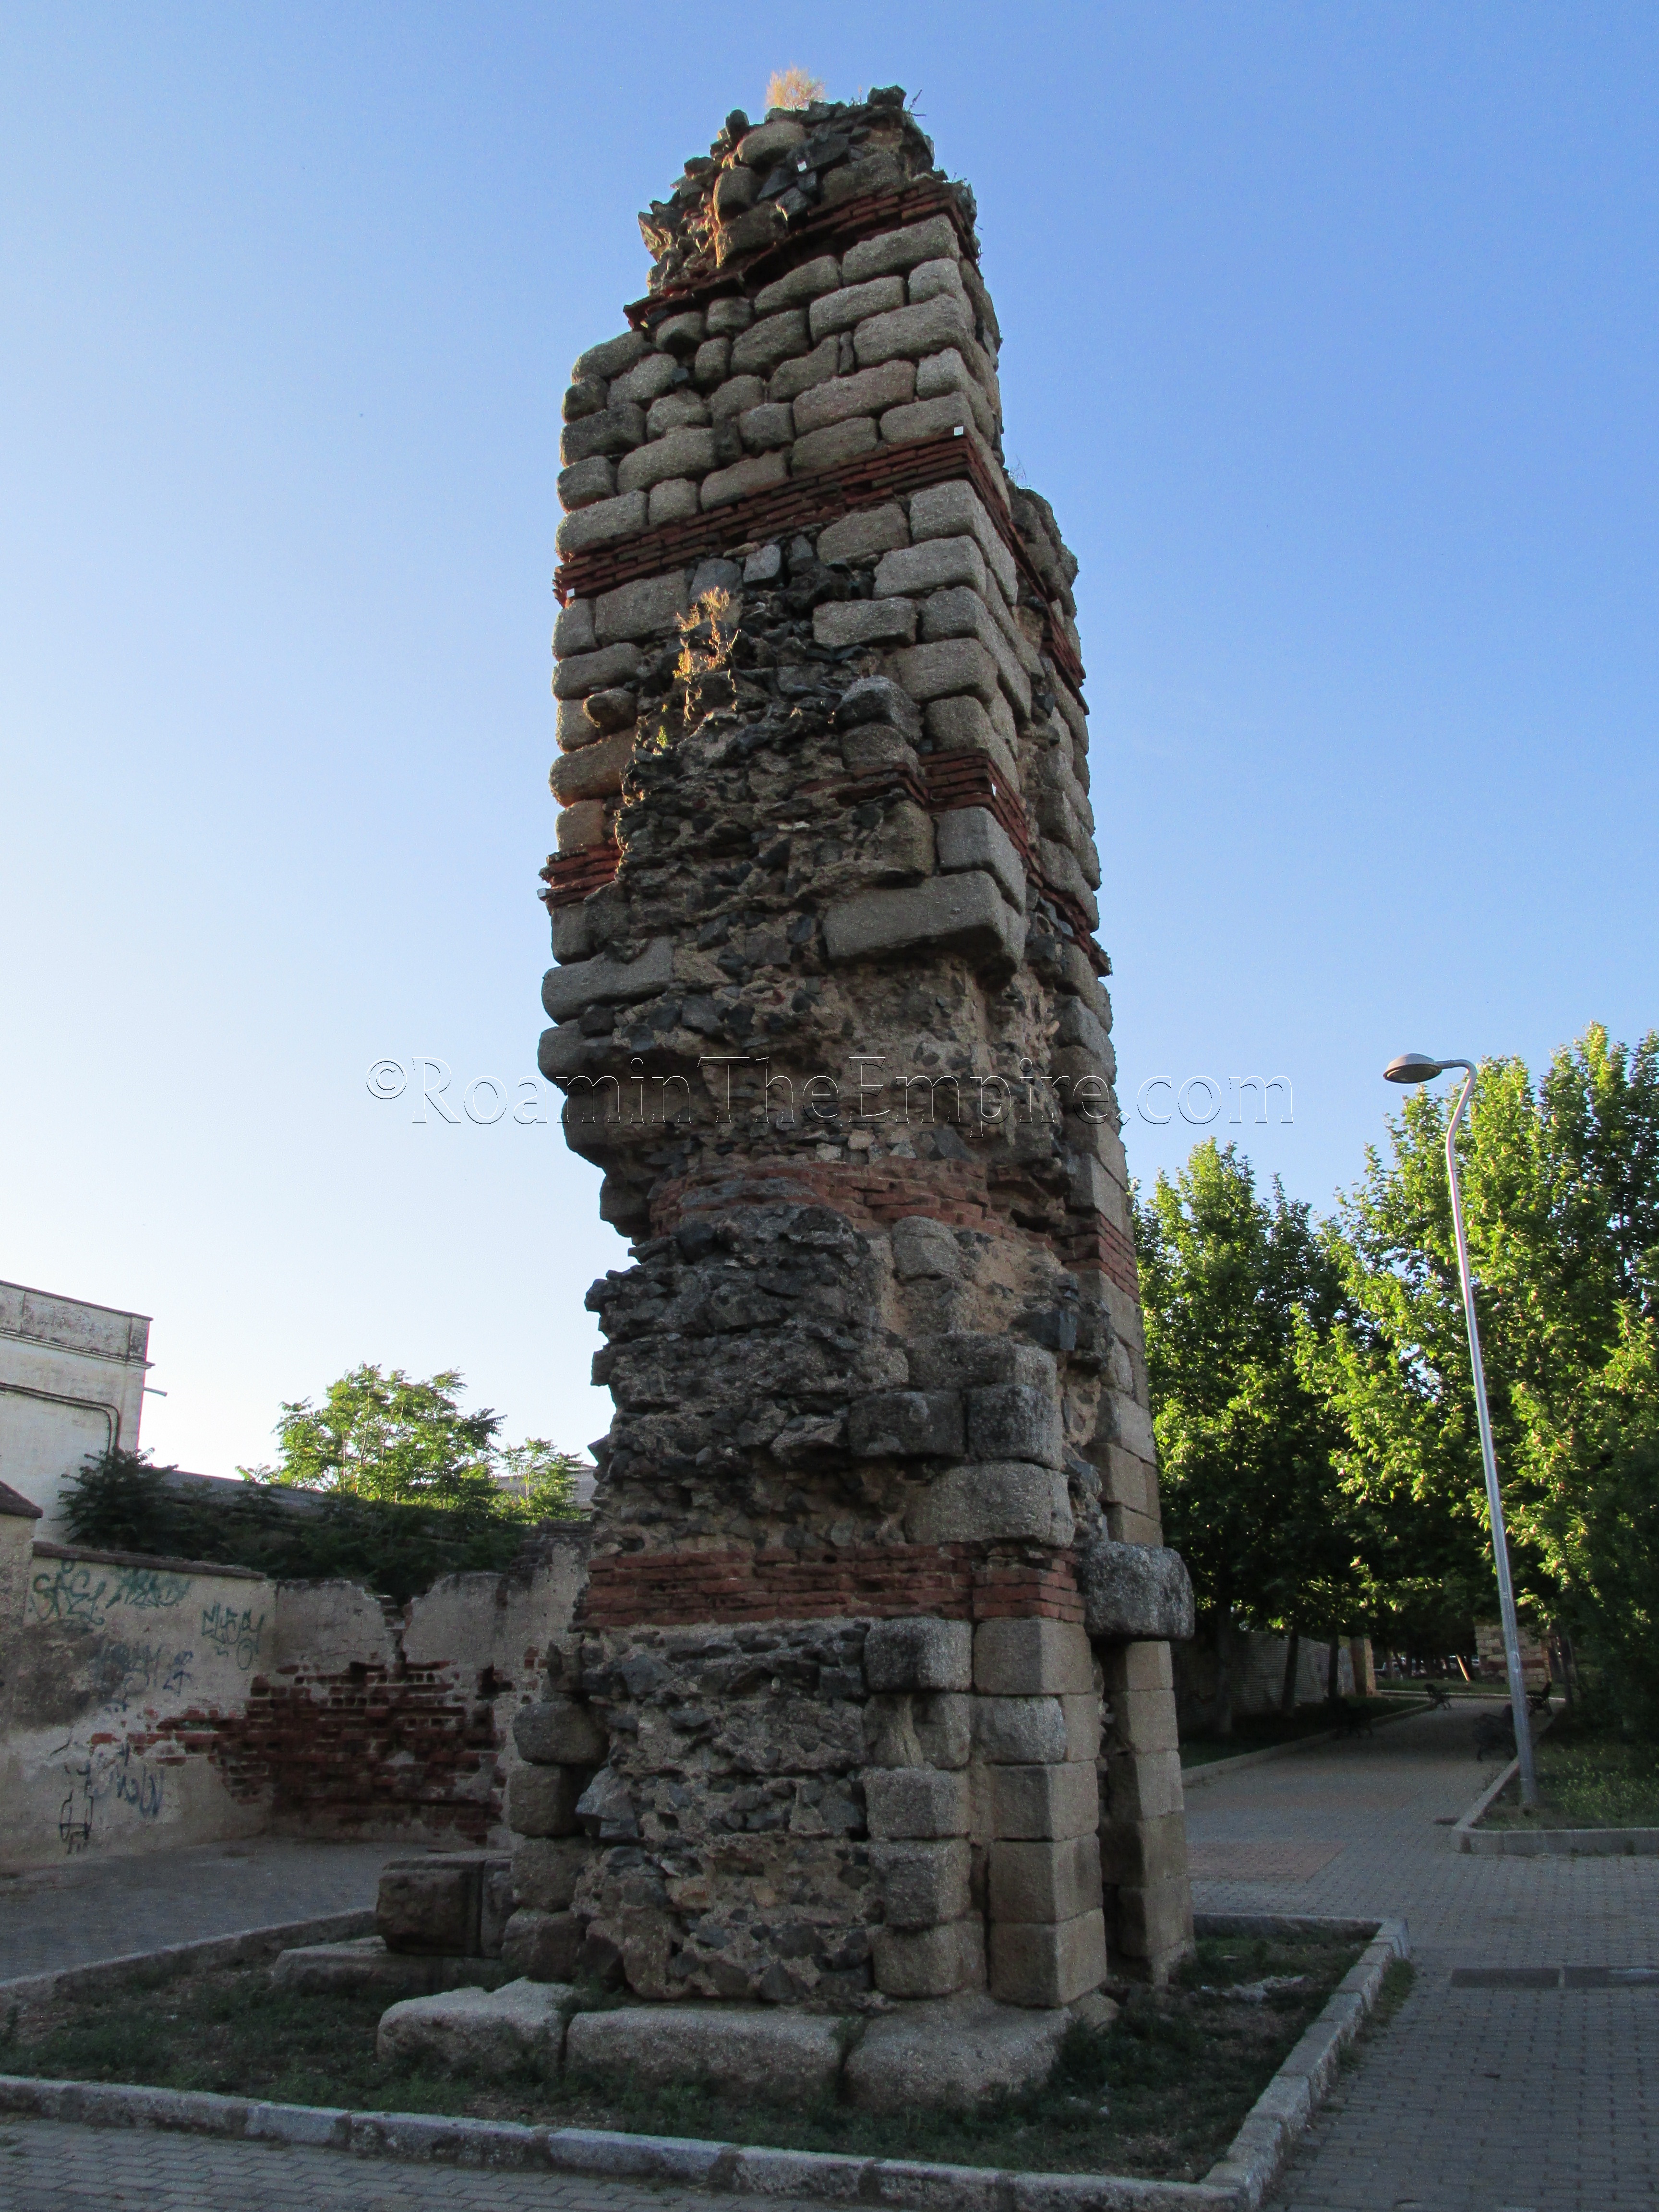 Single pillar of the Proserpina Aqueduct.